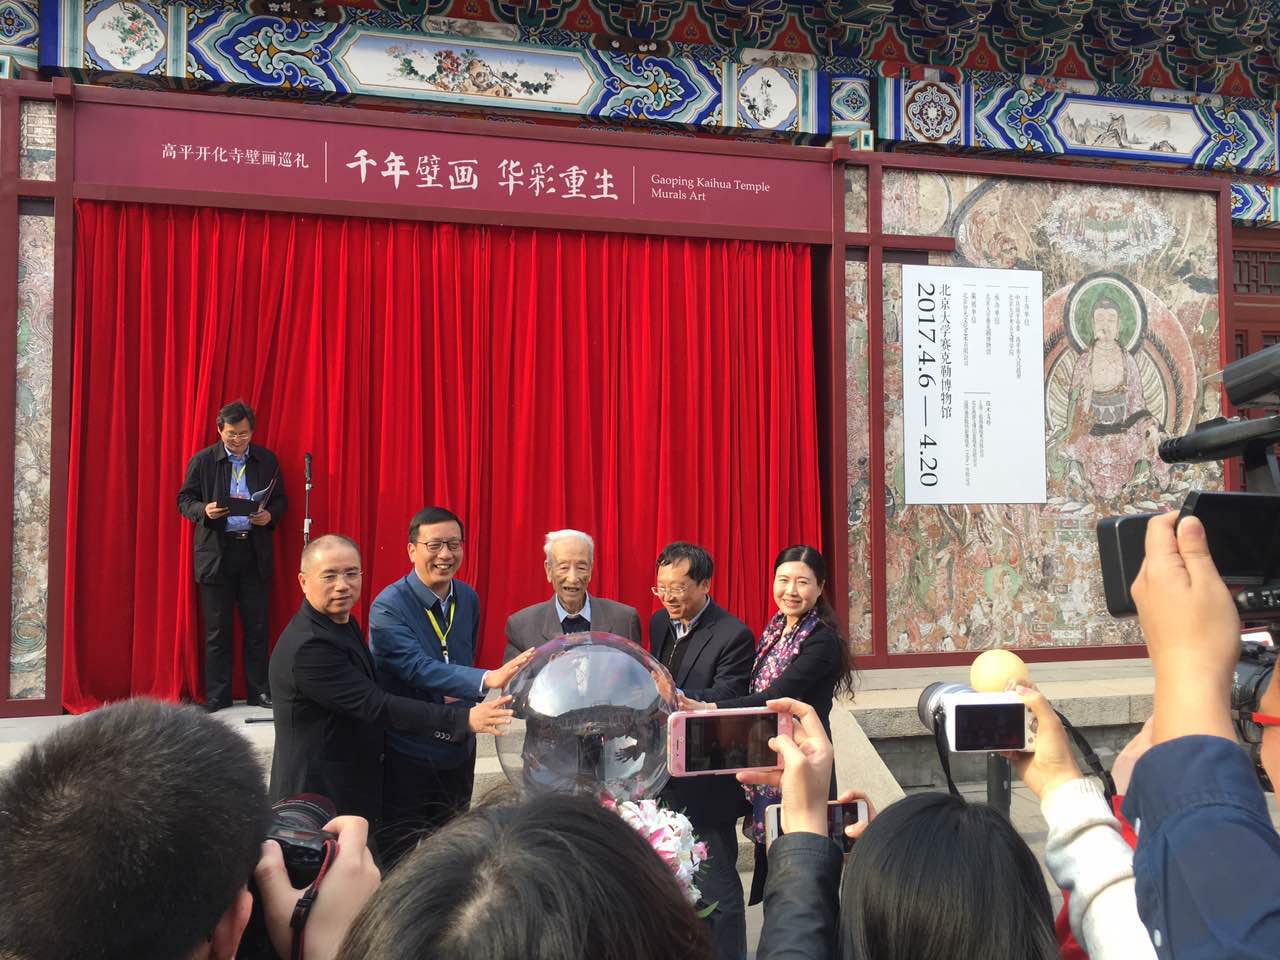 【直播】山西·高平开化寺壁画巡展北大站开幕式